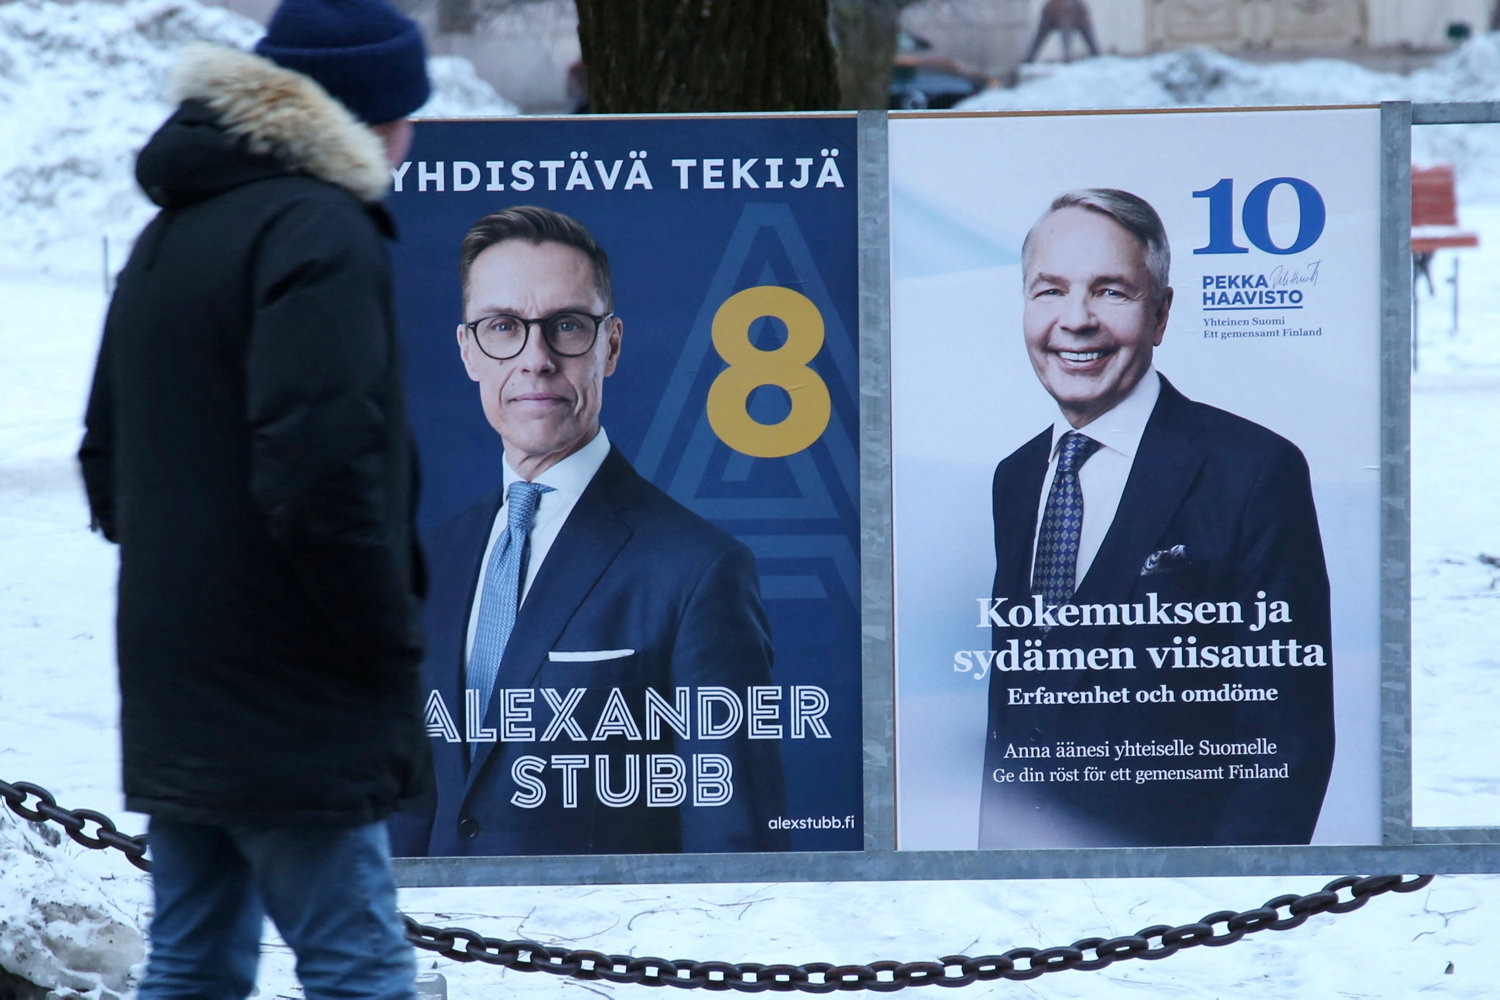 nato-positiv kandidat er favorit ved afgørende valg i finland